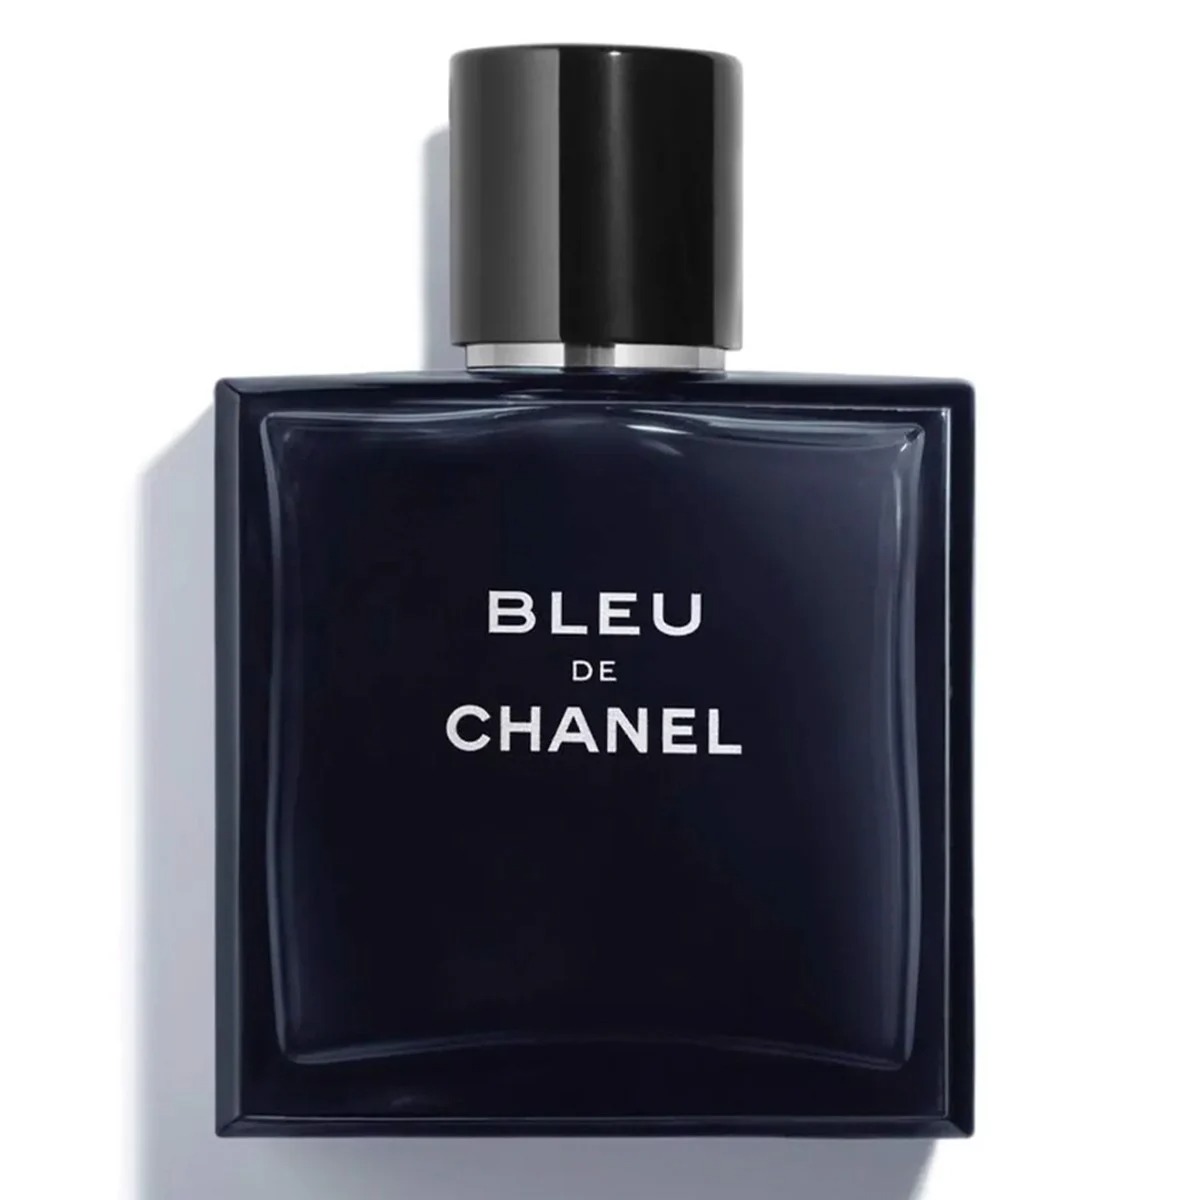 Bleu De Chanel Eau de Toilette